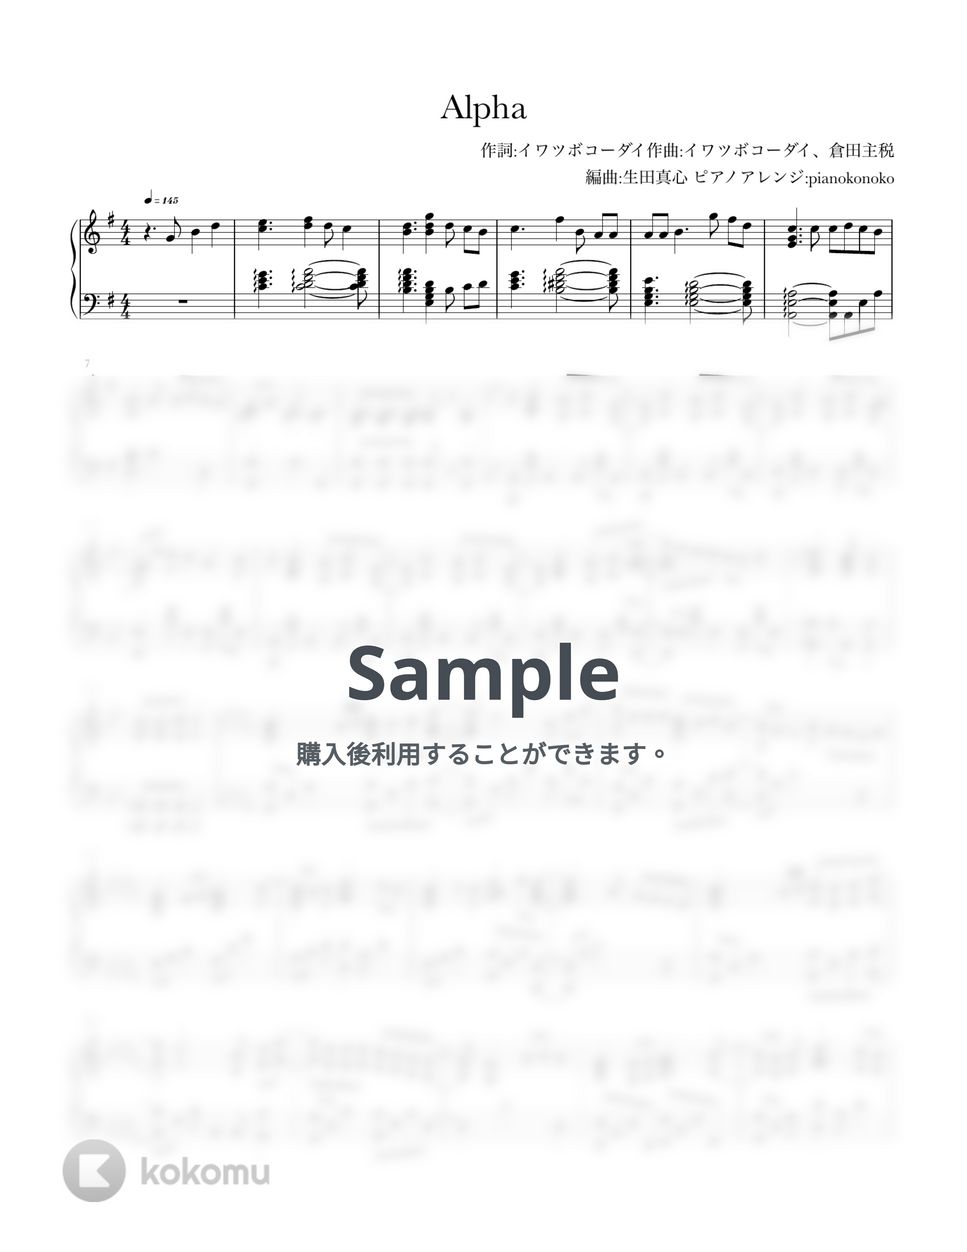 なにわ男子 - Alpha (ピアノソロ/なにわ男子/＋Alpha/新曲) by pianokonoko